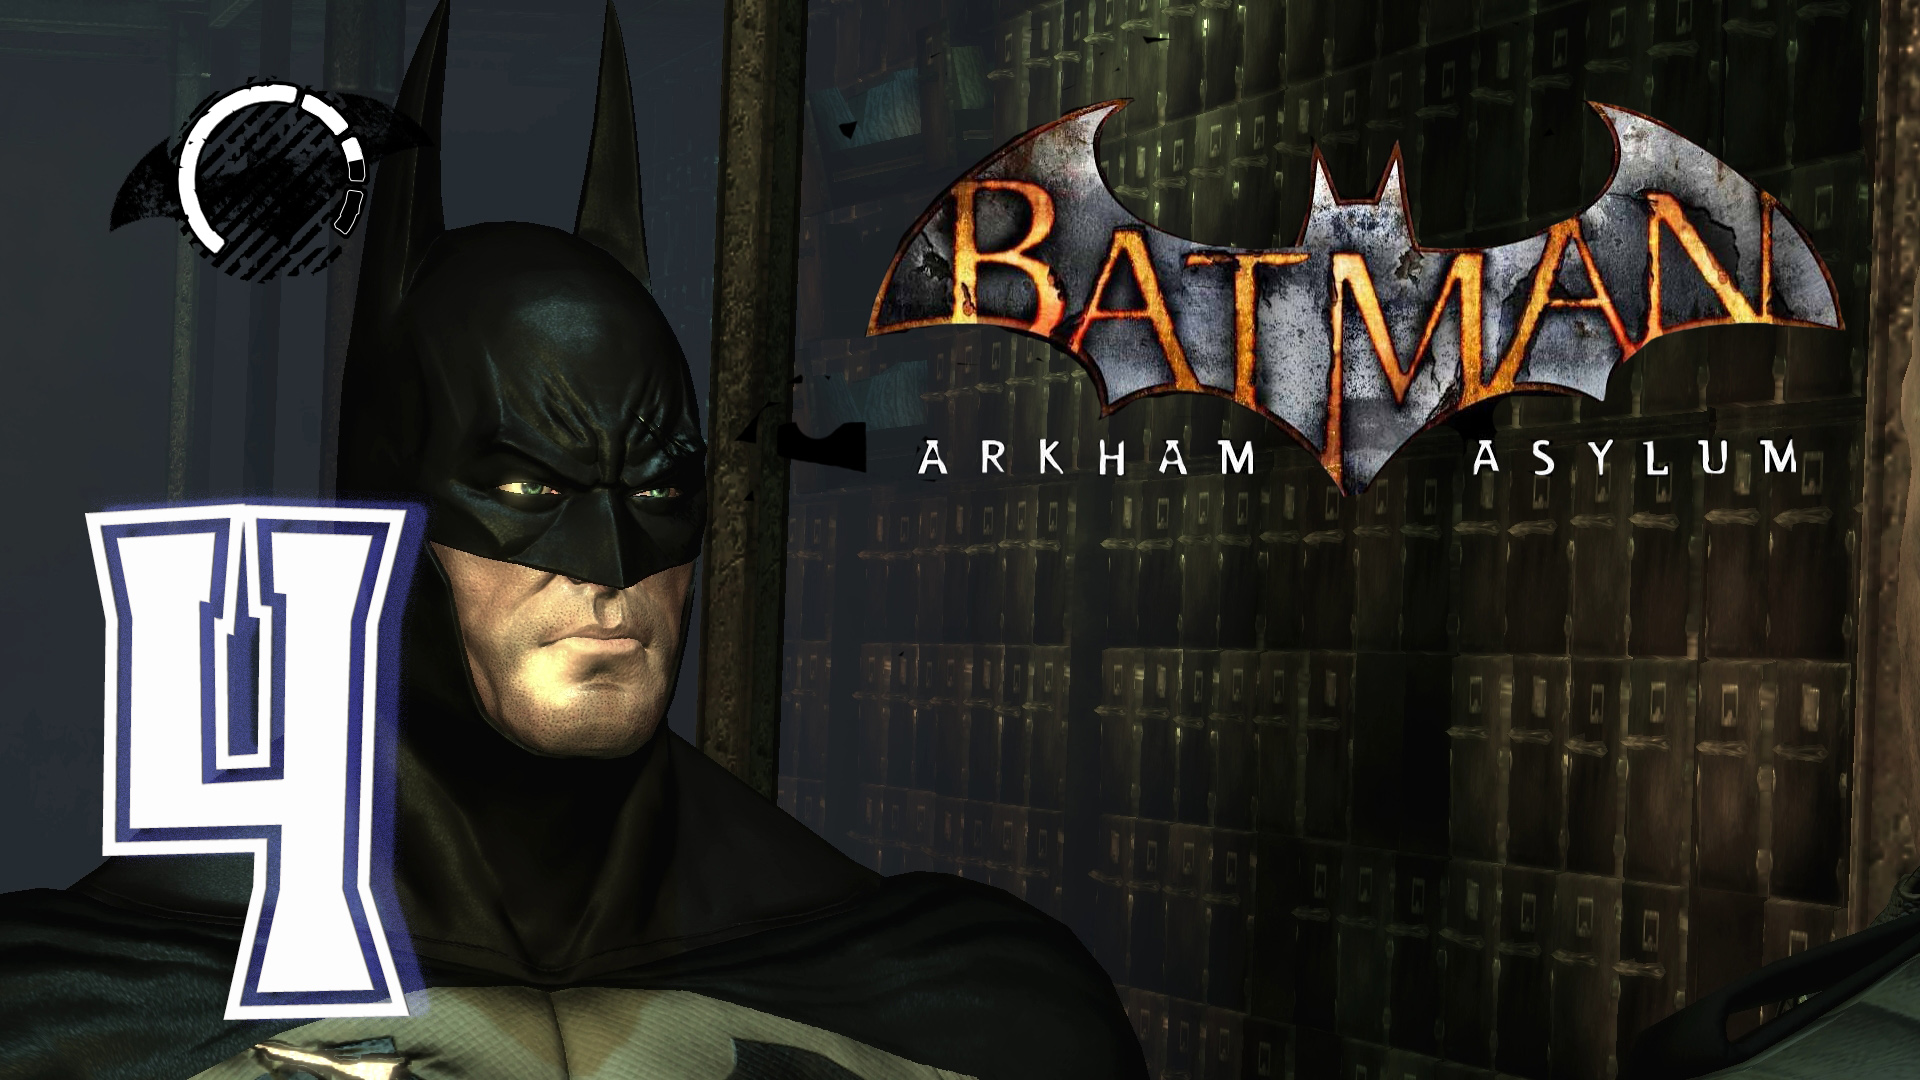 Доктор Леланд Бэтмен. Batman: Arkham Asylum золотое издание обложка. Batman Arkham Asylum картинки. Аркхем асилум русификатор